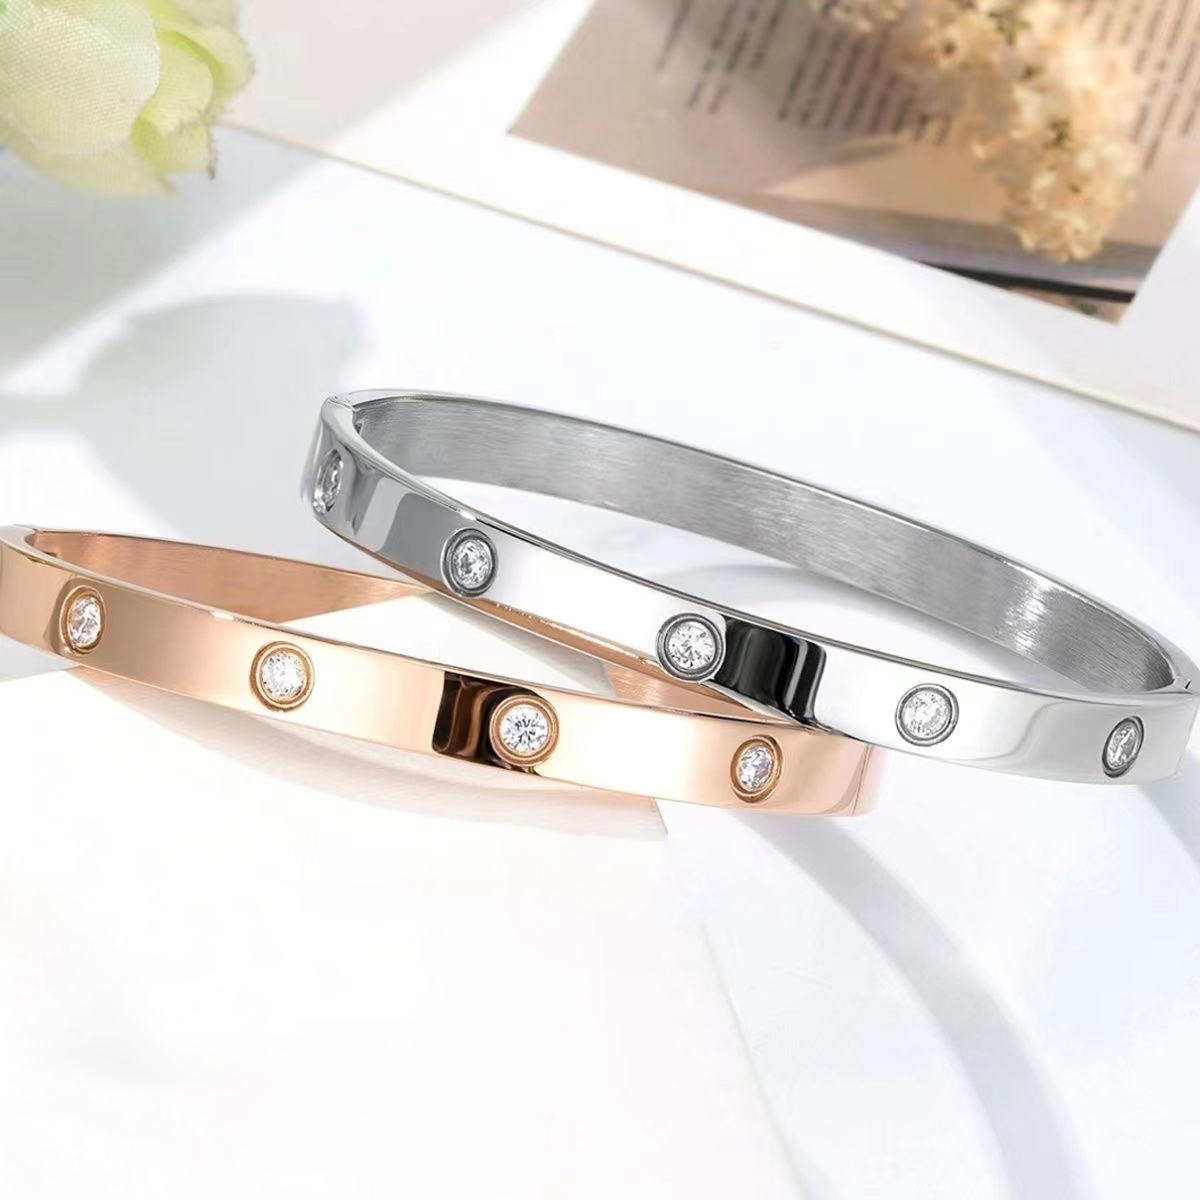 Bracelet de créateur bracelets de luxe bracelets breloque simple tempérament femmes or rose argent femmes bijoux diamant bijoux de créateur femmes bracelet cadeau très agréable